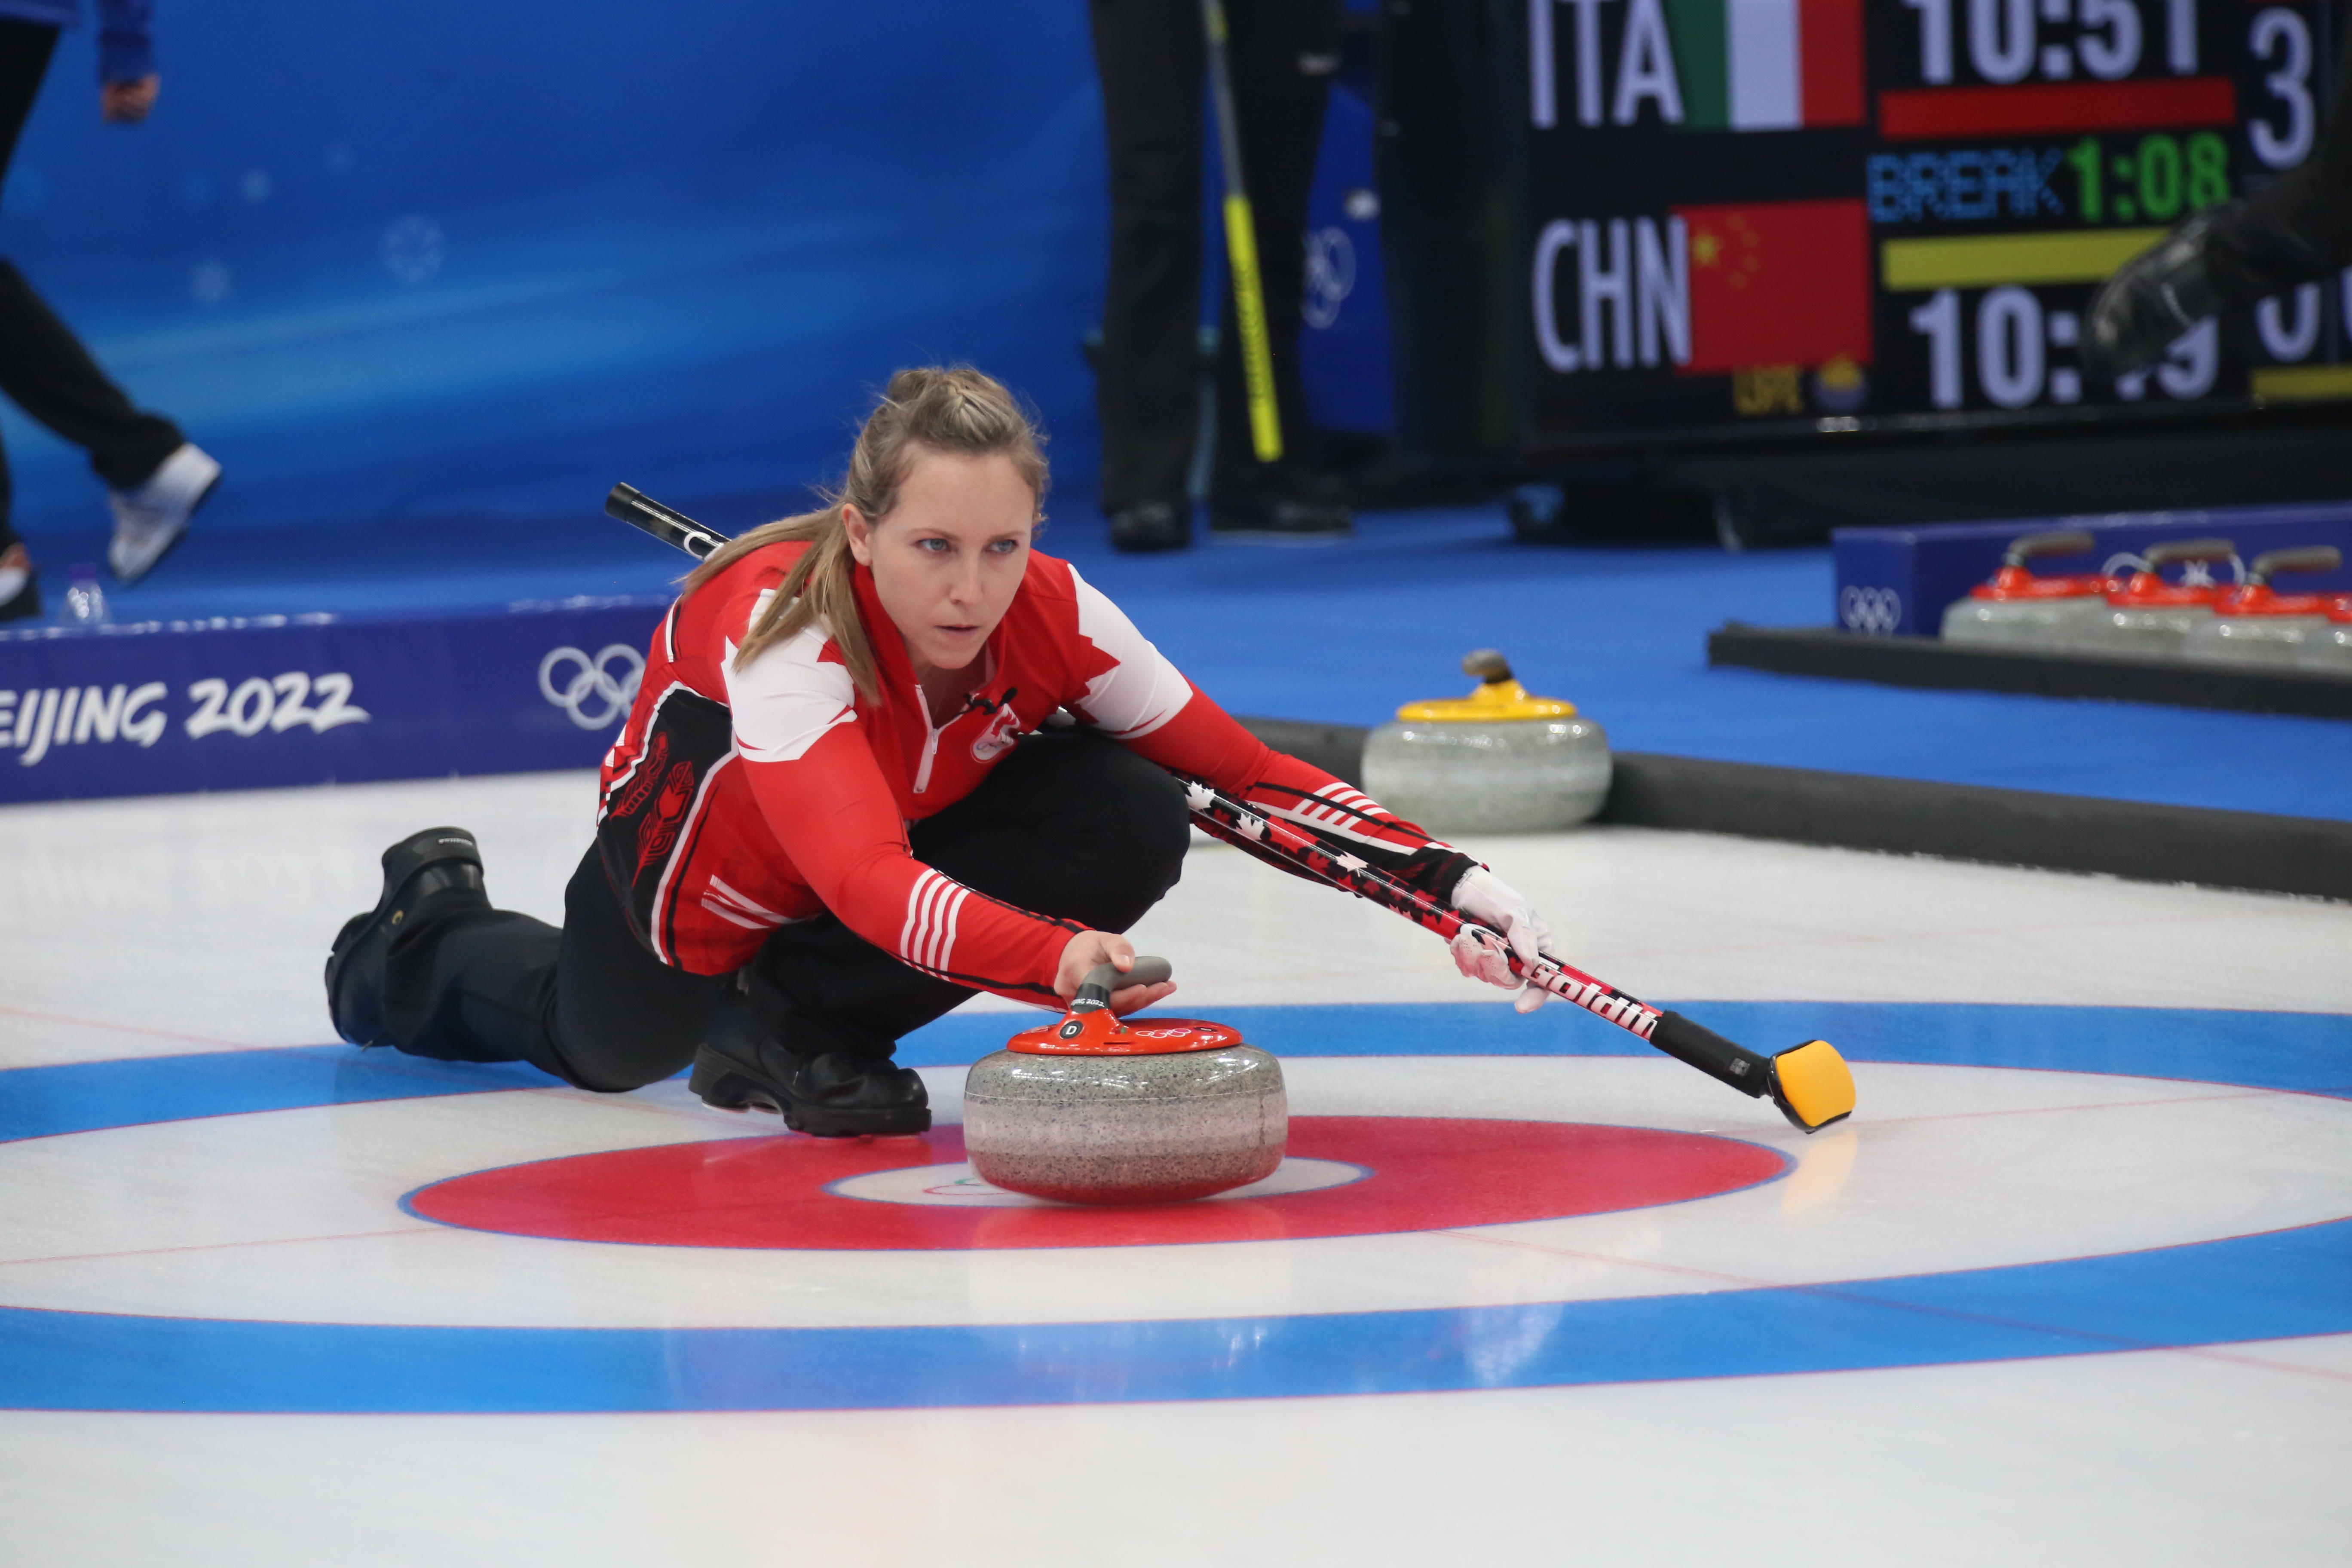 加拿大选手蕾切尔·霍曼在北京冬奥会混双冰壶比赛中